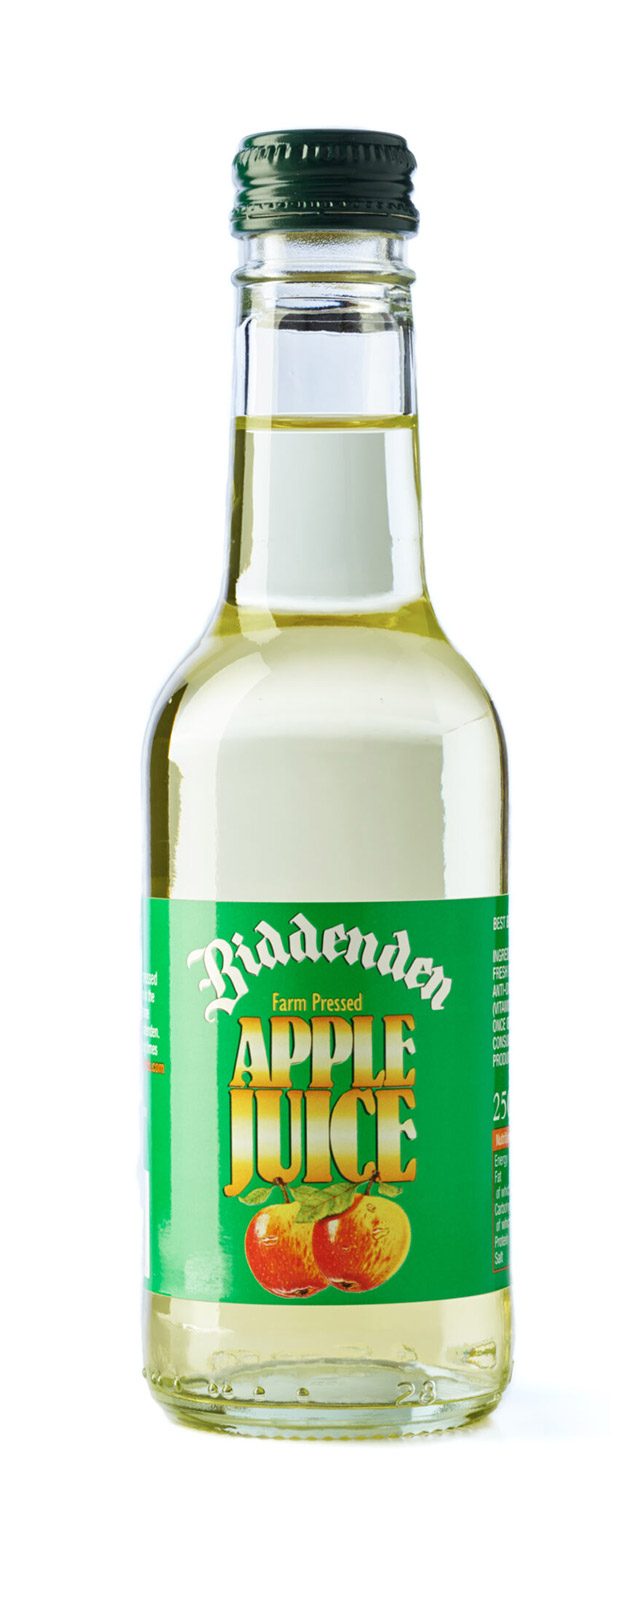 Biddenden Apple Juice 250ml bottle